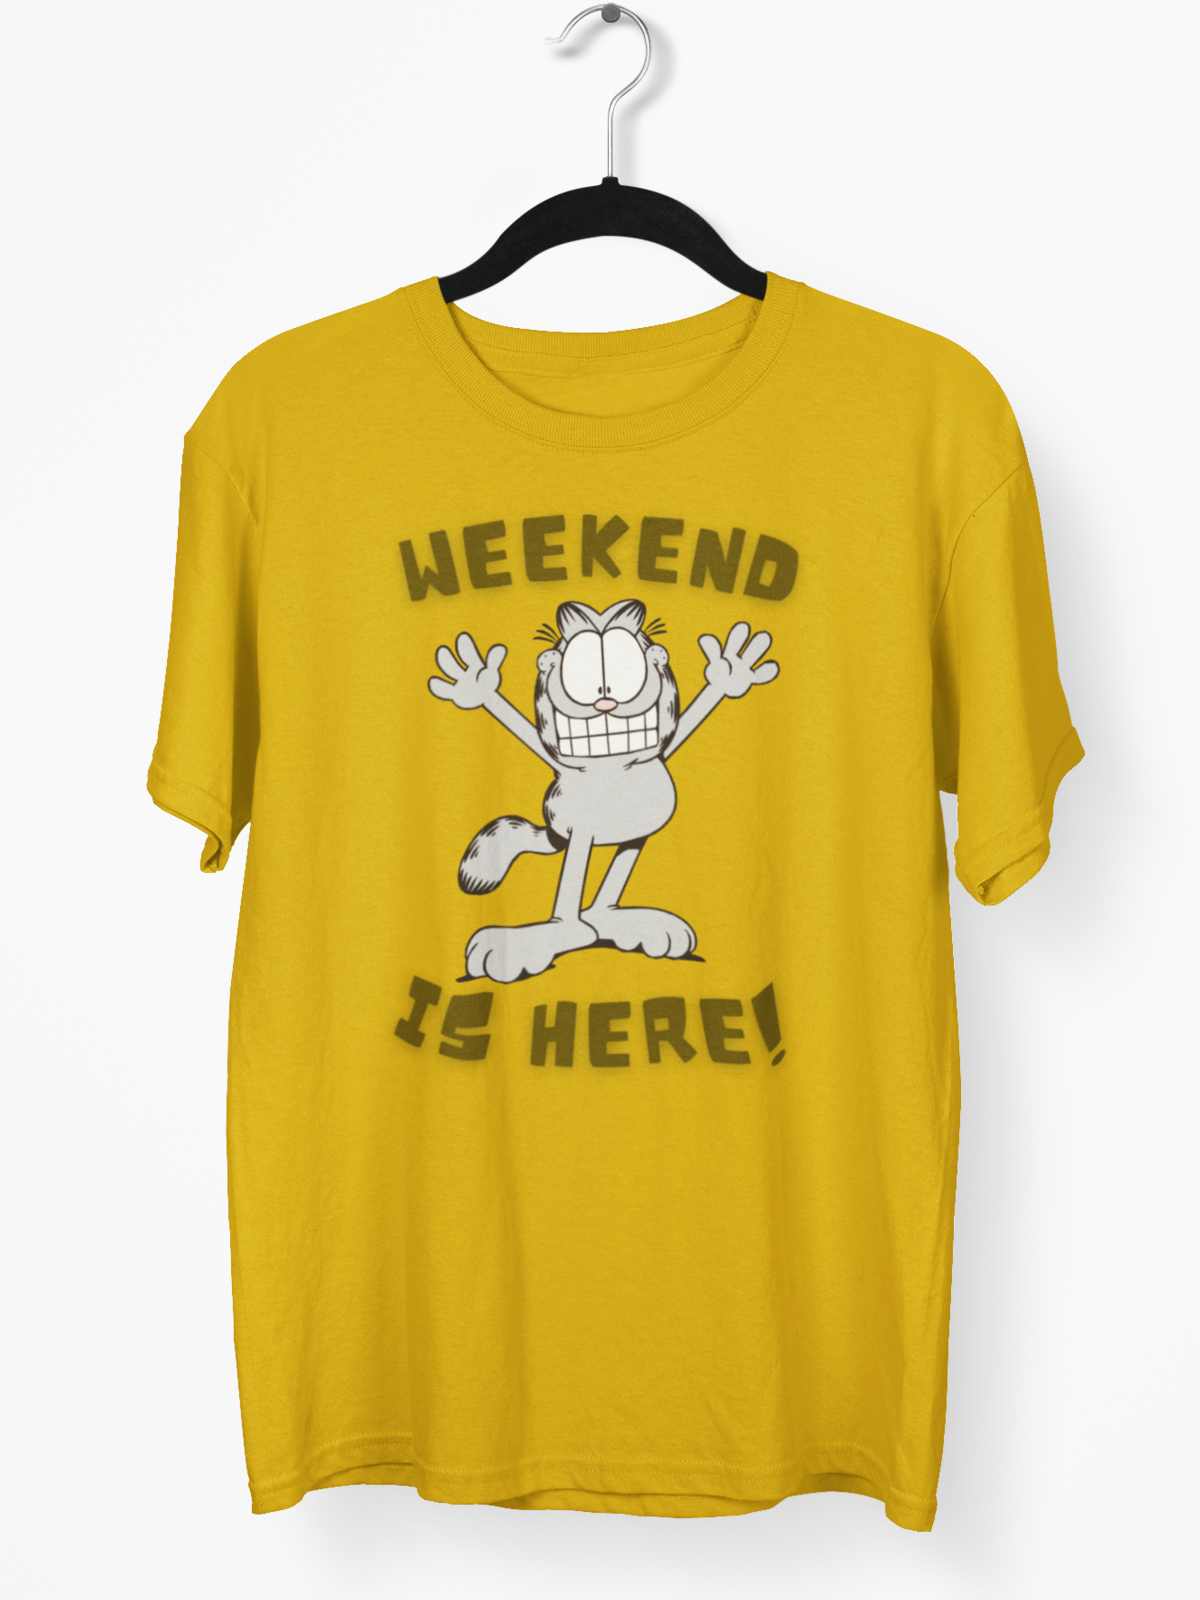 Weekend Is Here!: Garfield